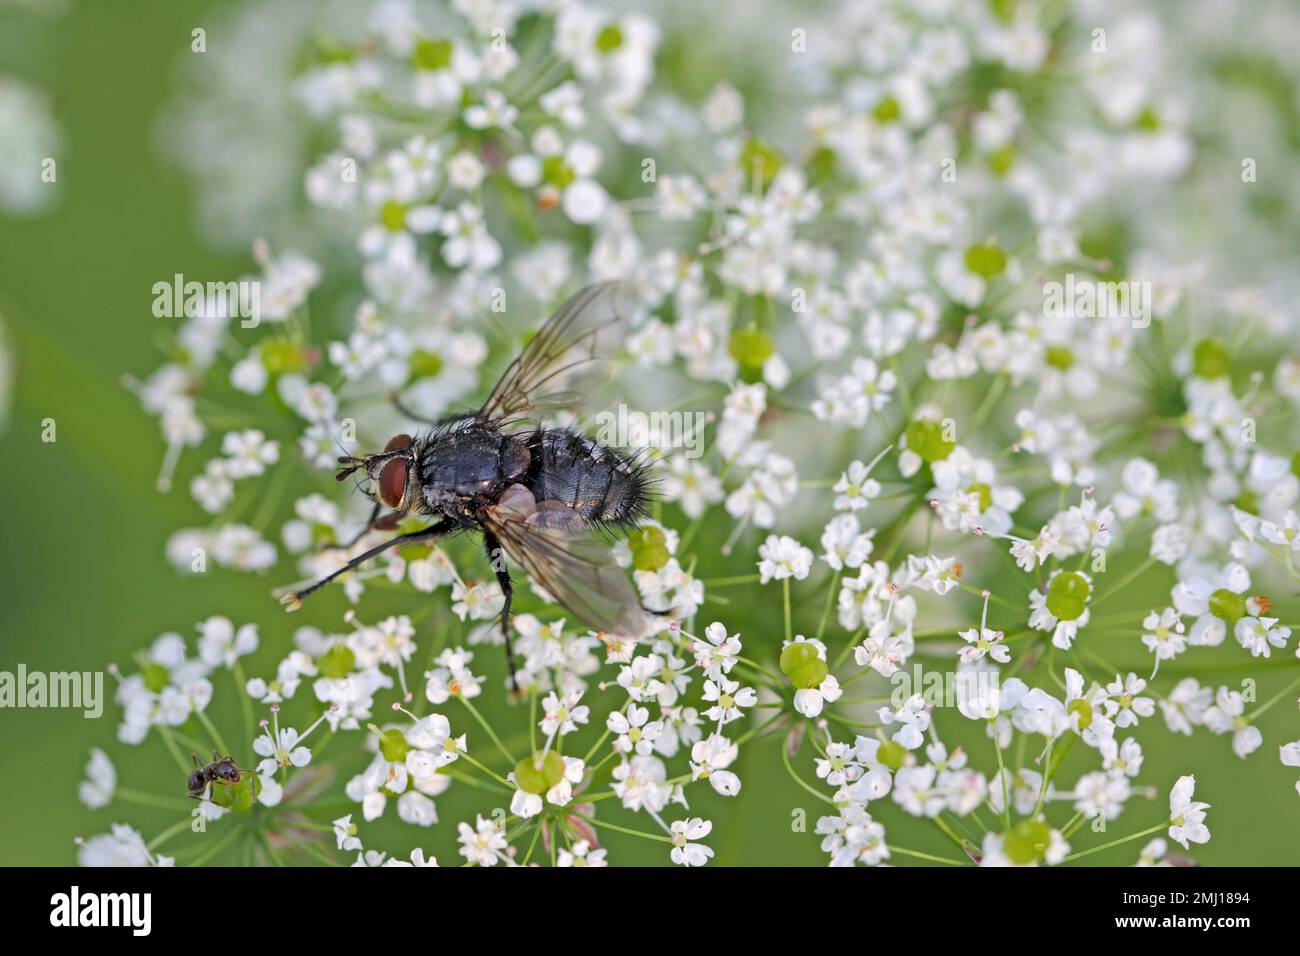 Tachinidfliege (Tachinidae sp.). Parasitoide anderer Insekten. Die Larven bekämpfen Pflanzenschädlinge. Eine Fliege auf einer Blume. Stockfoto